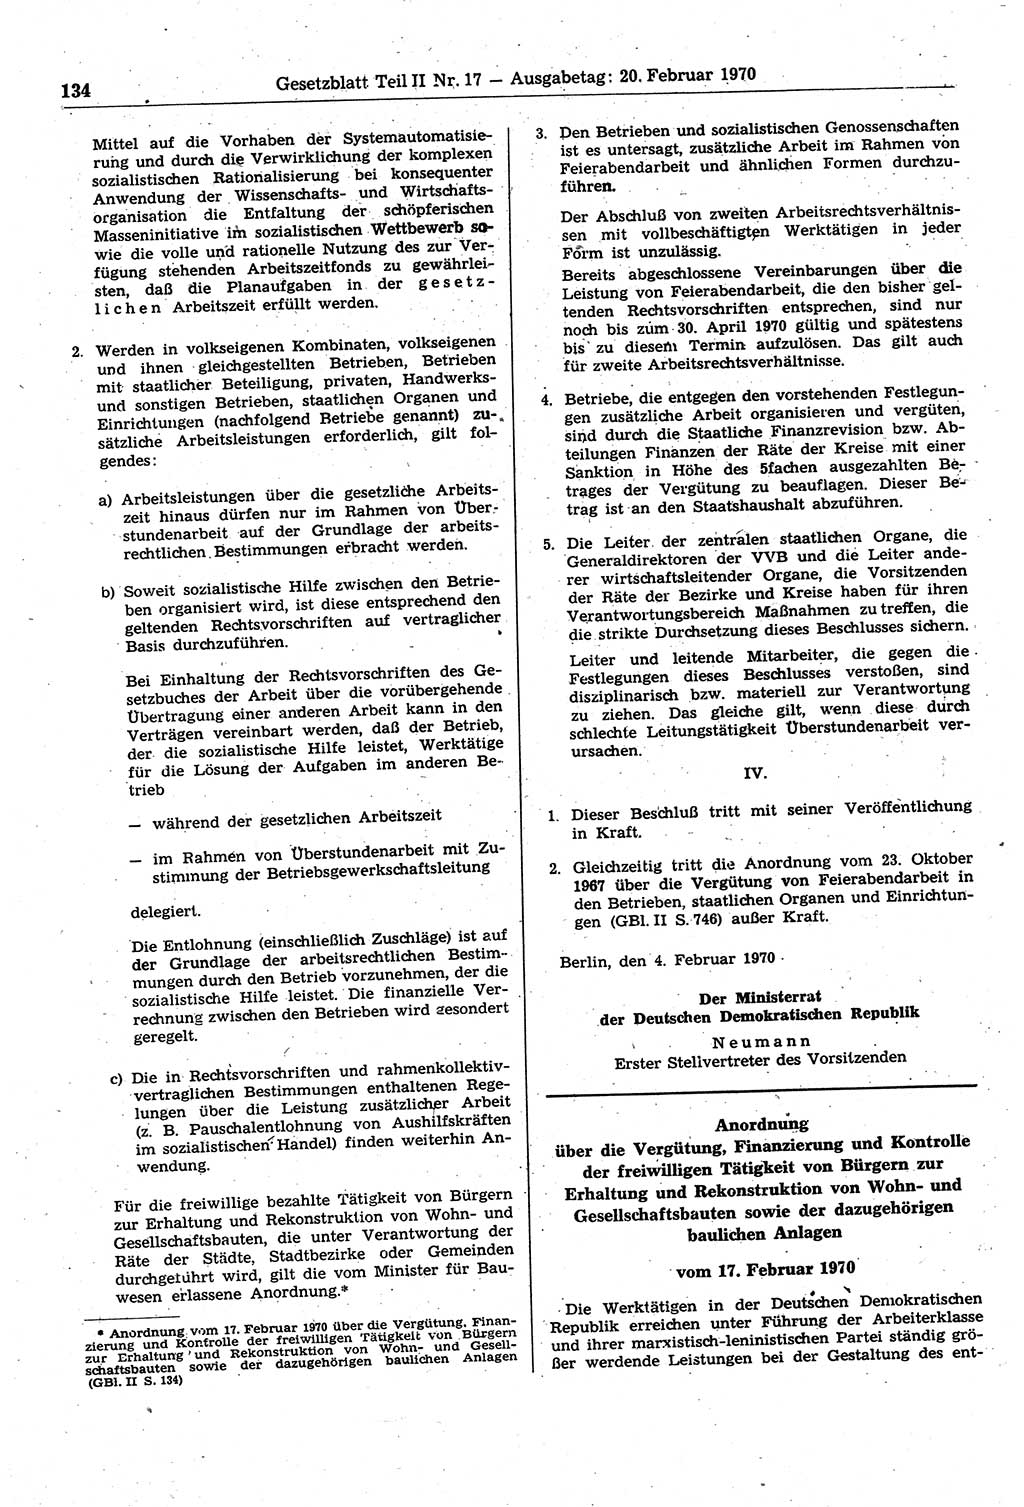 Gesetzblatt (GBl.) der Deutschen Demokratischen Republik (DDR) Teil ⅠⅠ 1970, Seite 134 (GBl. DDR ⅠⅠ 1970, S. 134)